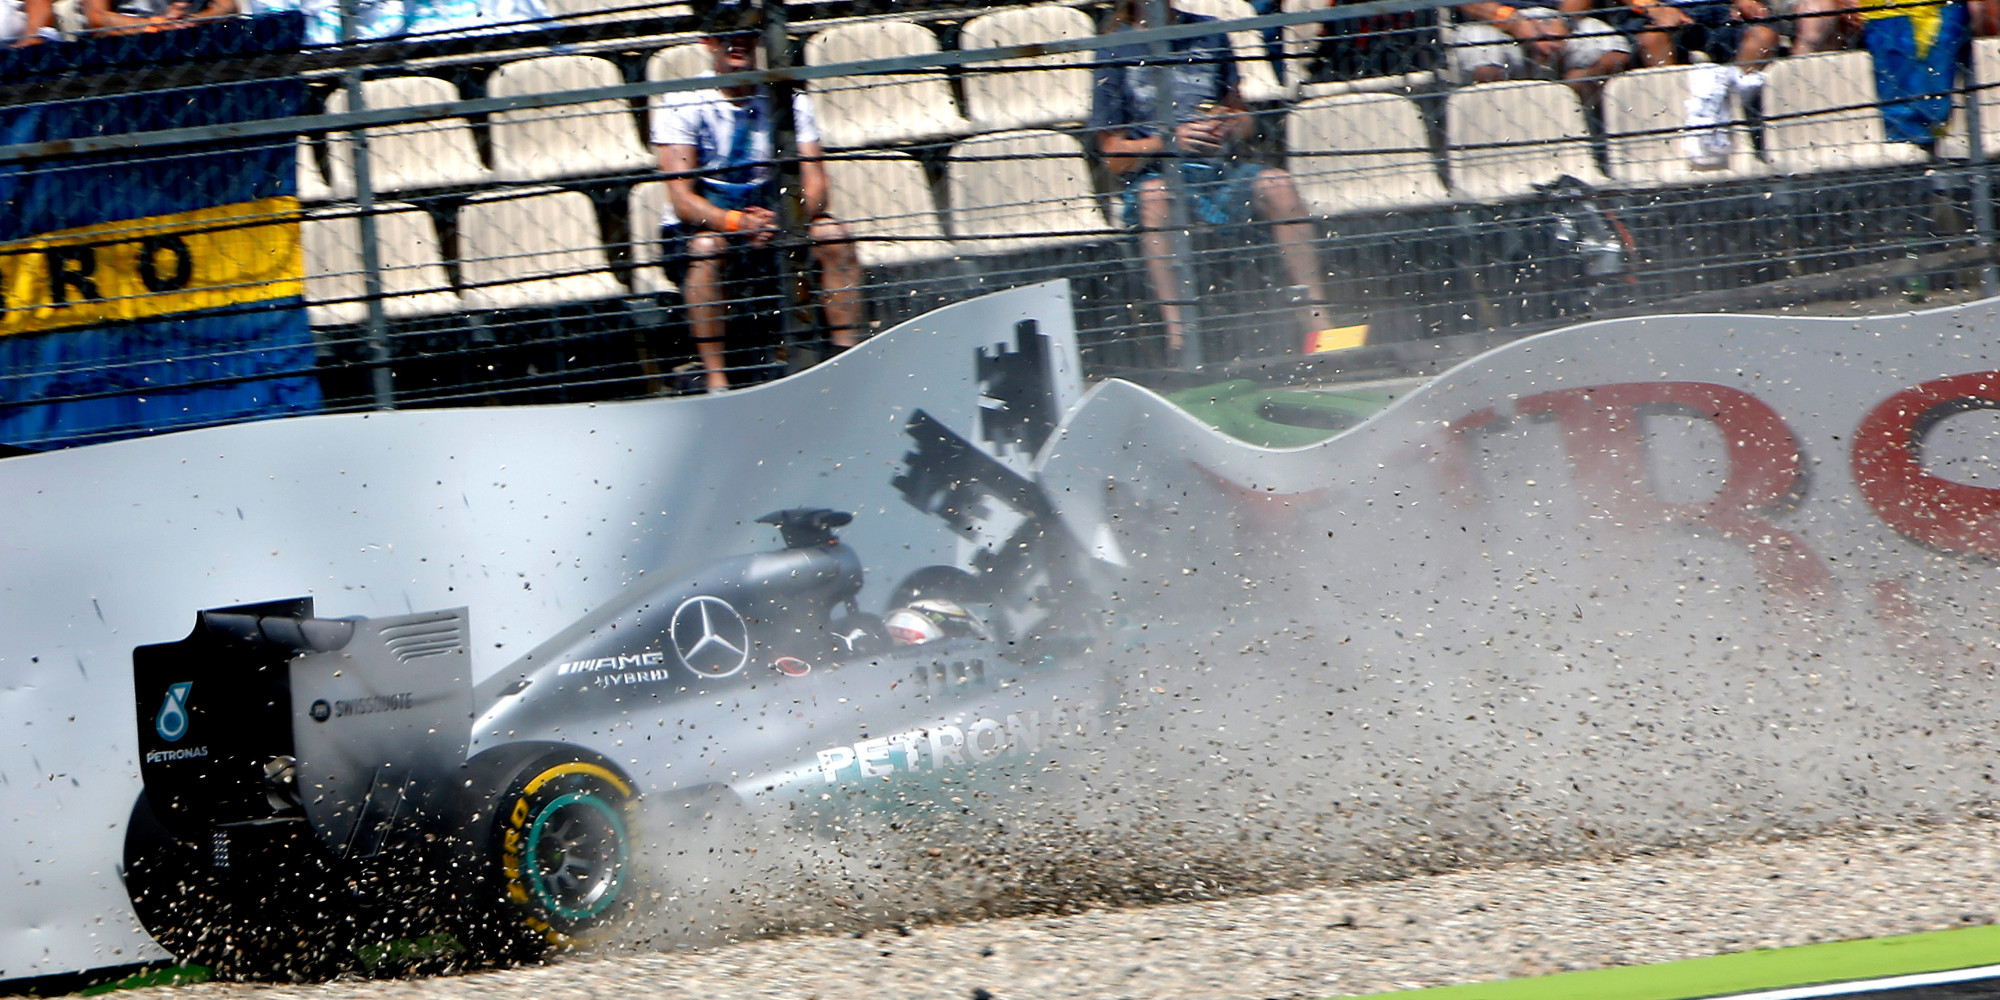 German Grand Prix Lewis Hamilton Crashes Out Of Qualifying As Nico Rosberg Takes Pole (PHOTOS)